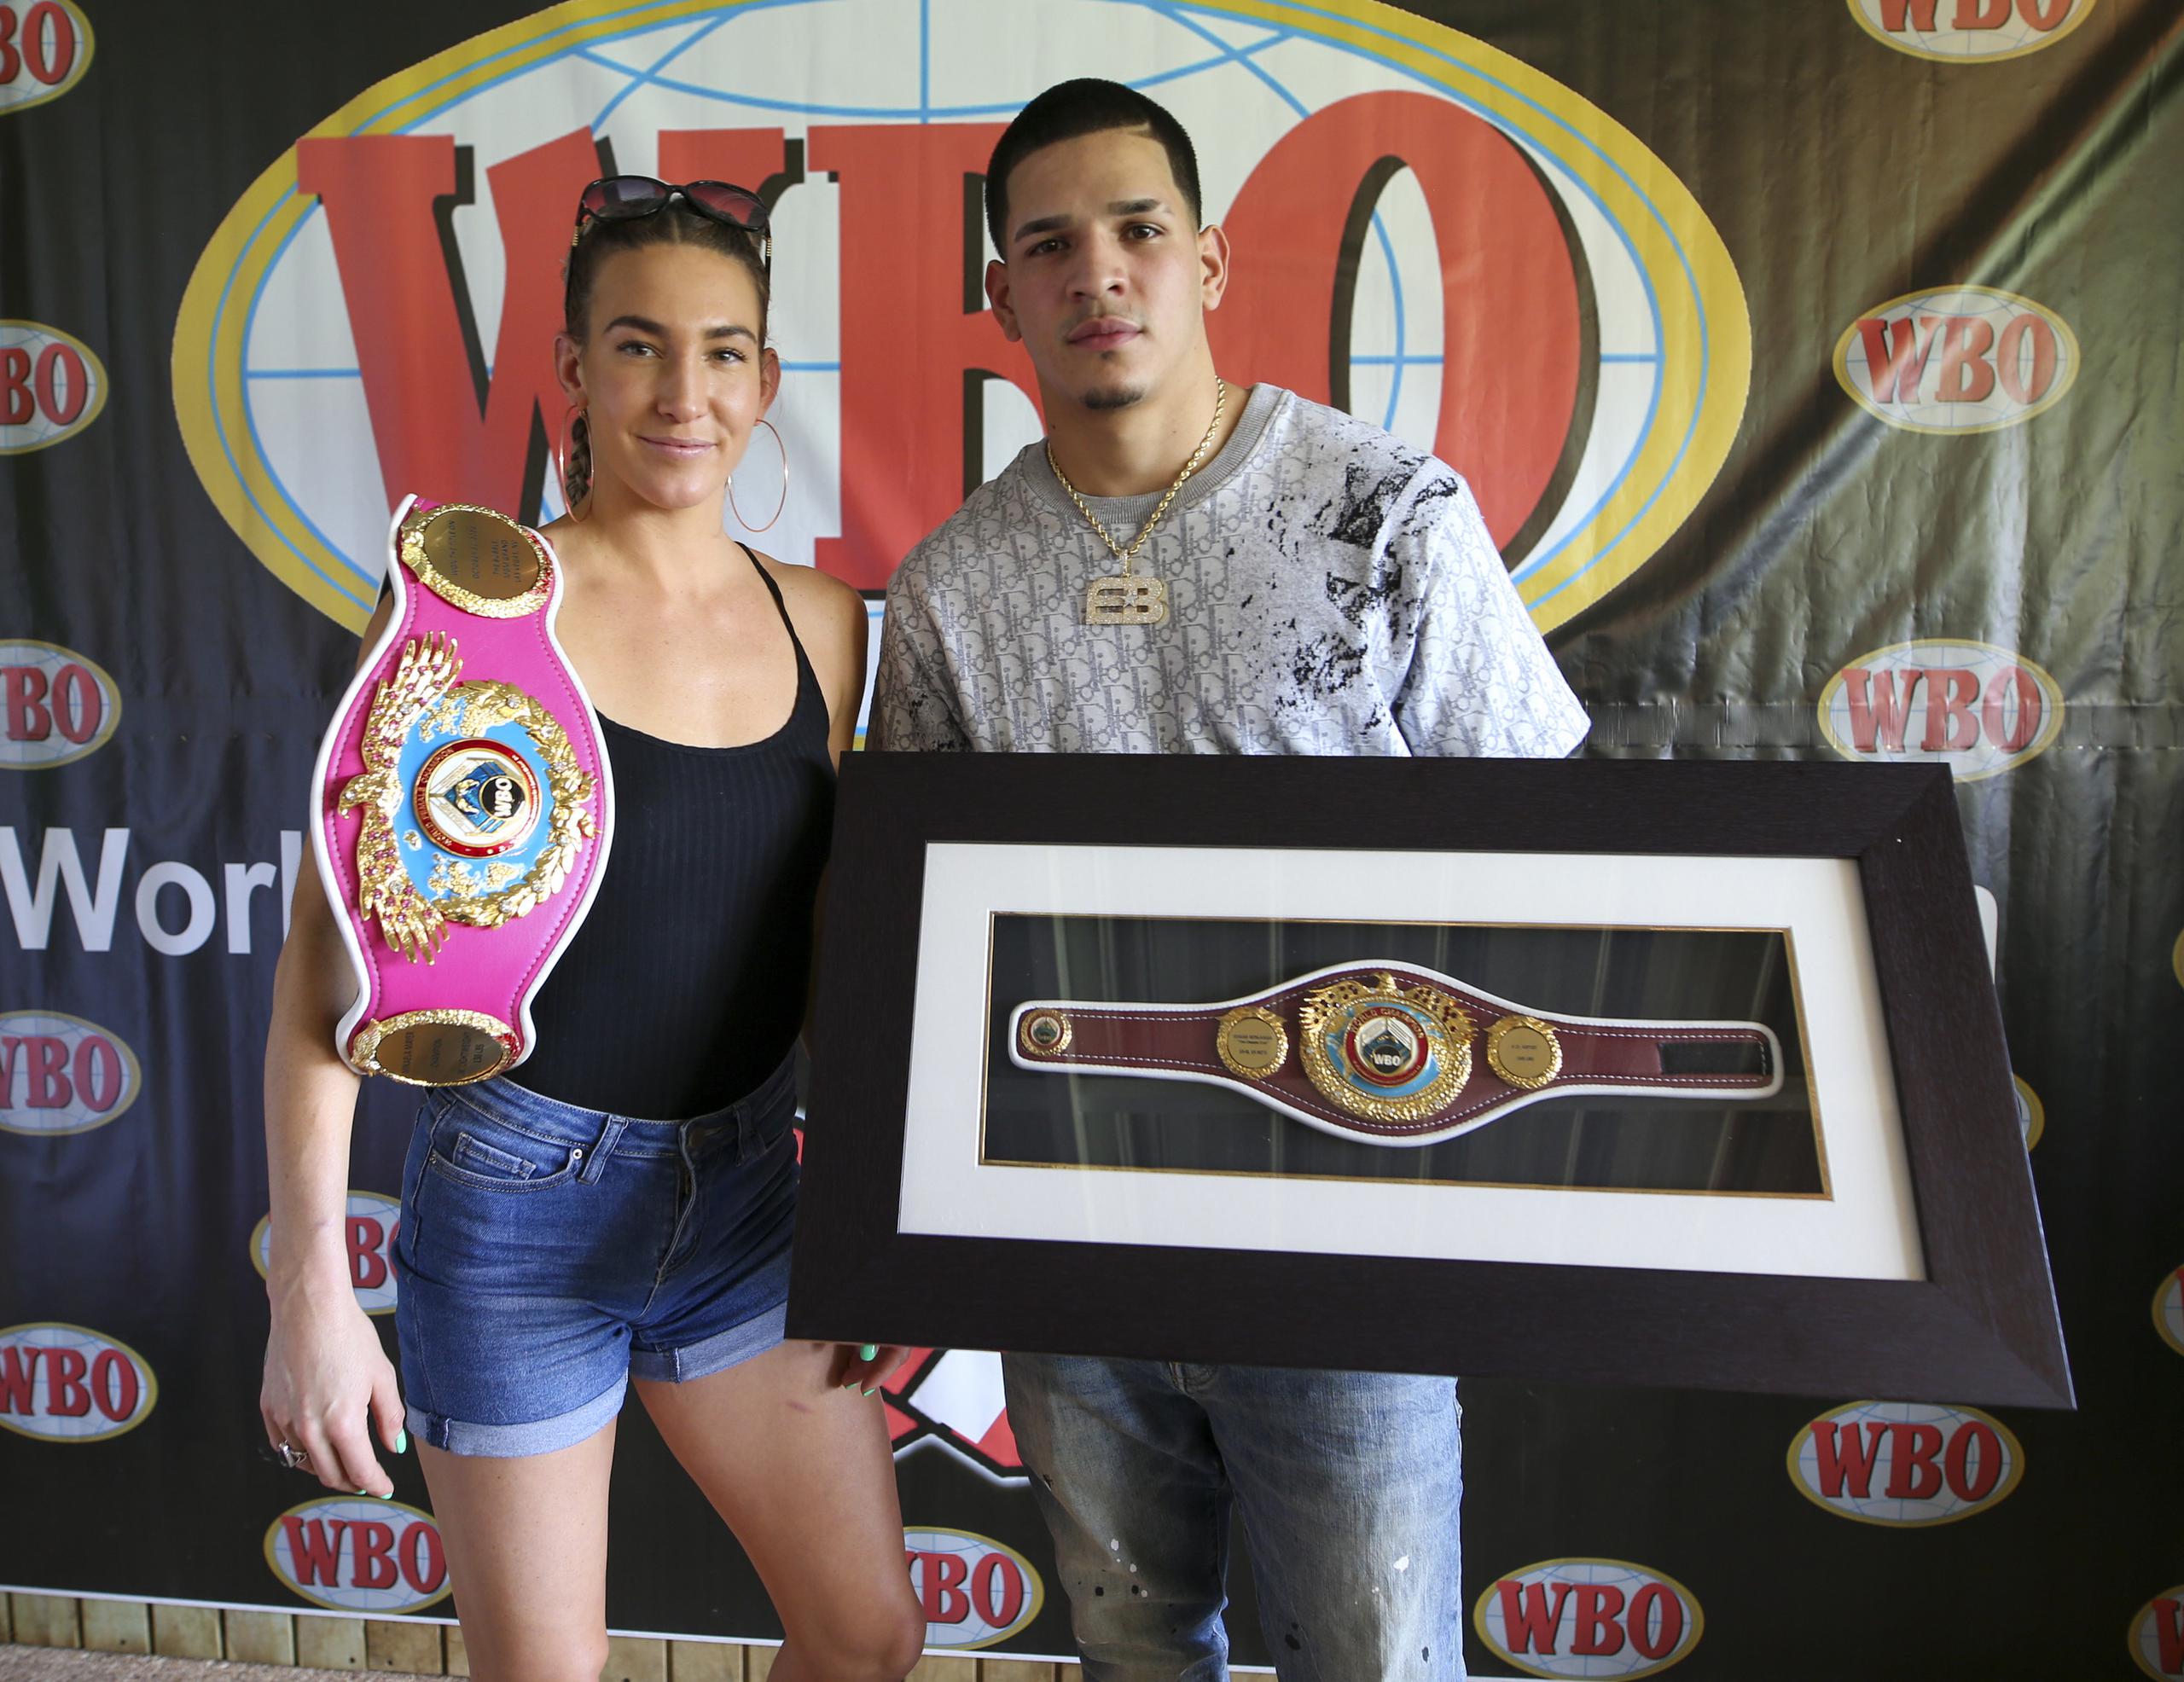 Edgar Berlanga recibió un cinturón honorario de la OMB durante una actividad para reconocer a la boxeadora estadounidense Mikaela Mayer.